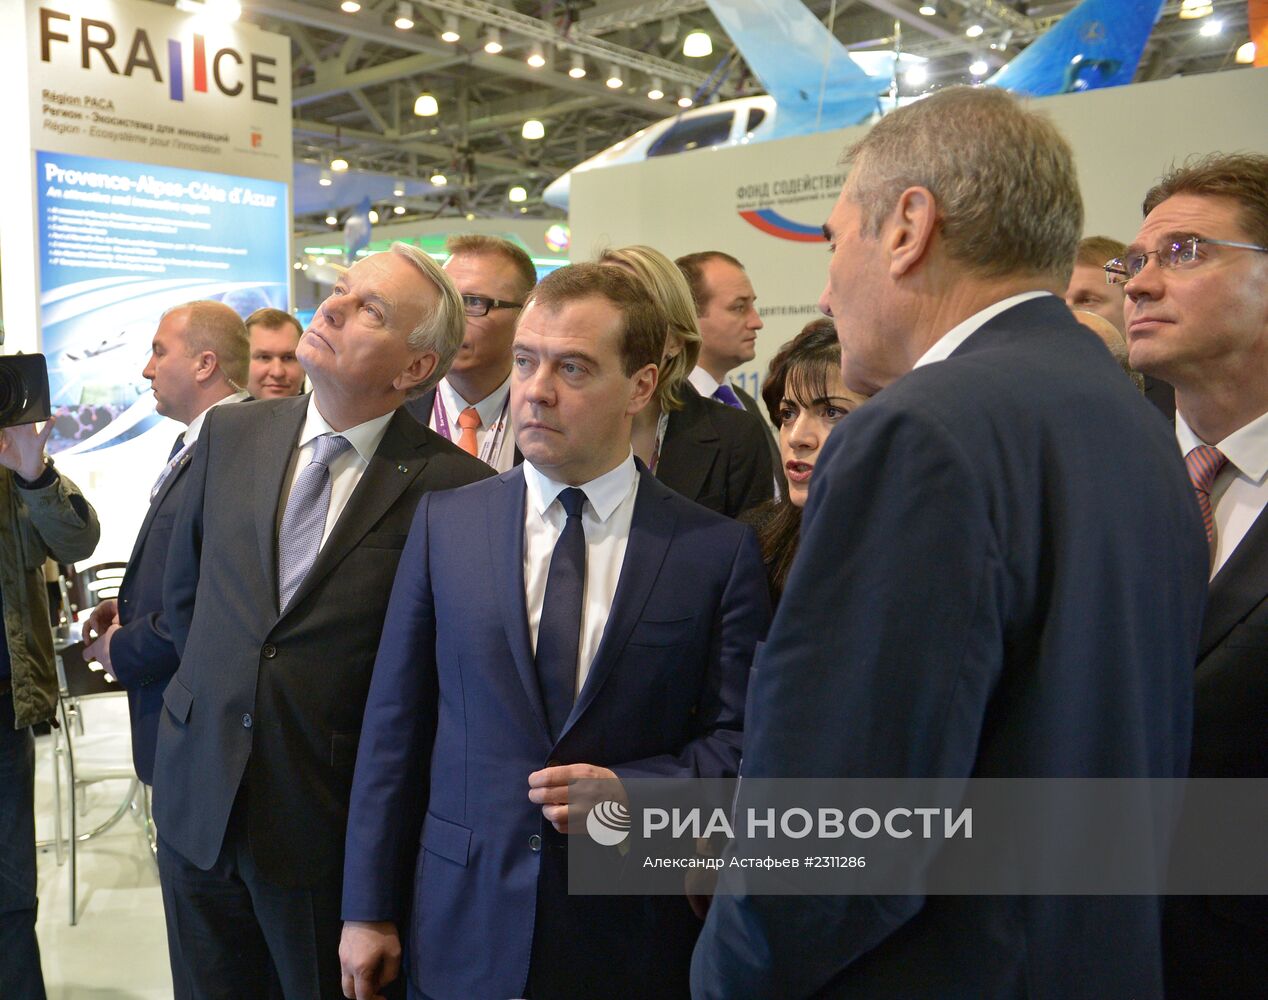 Д.Медведев на Московском международном форуме "Открытые инновации"